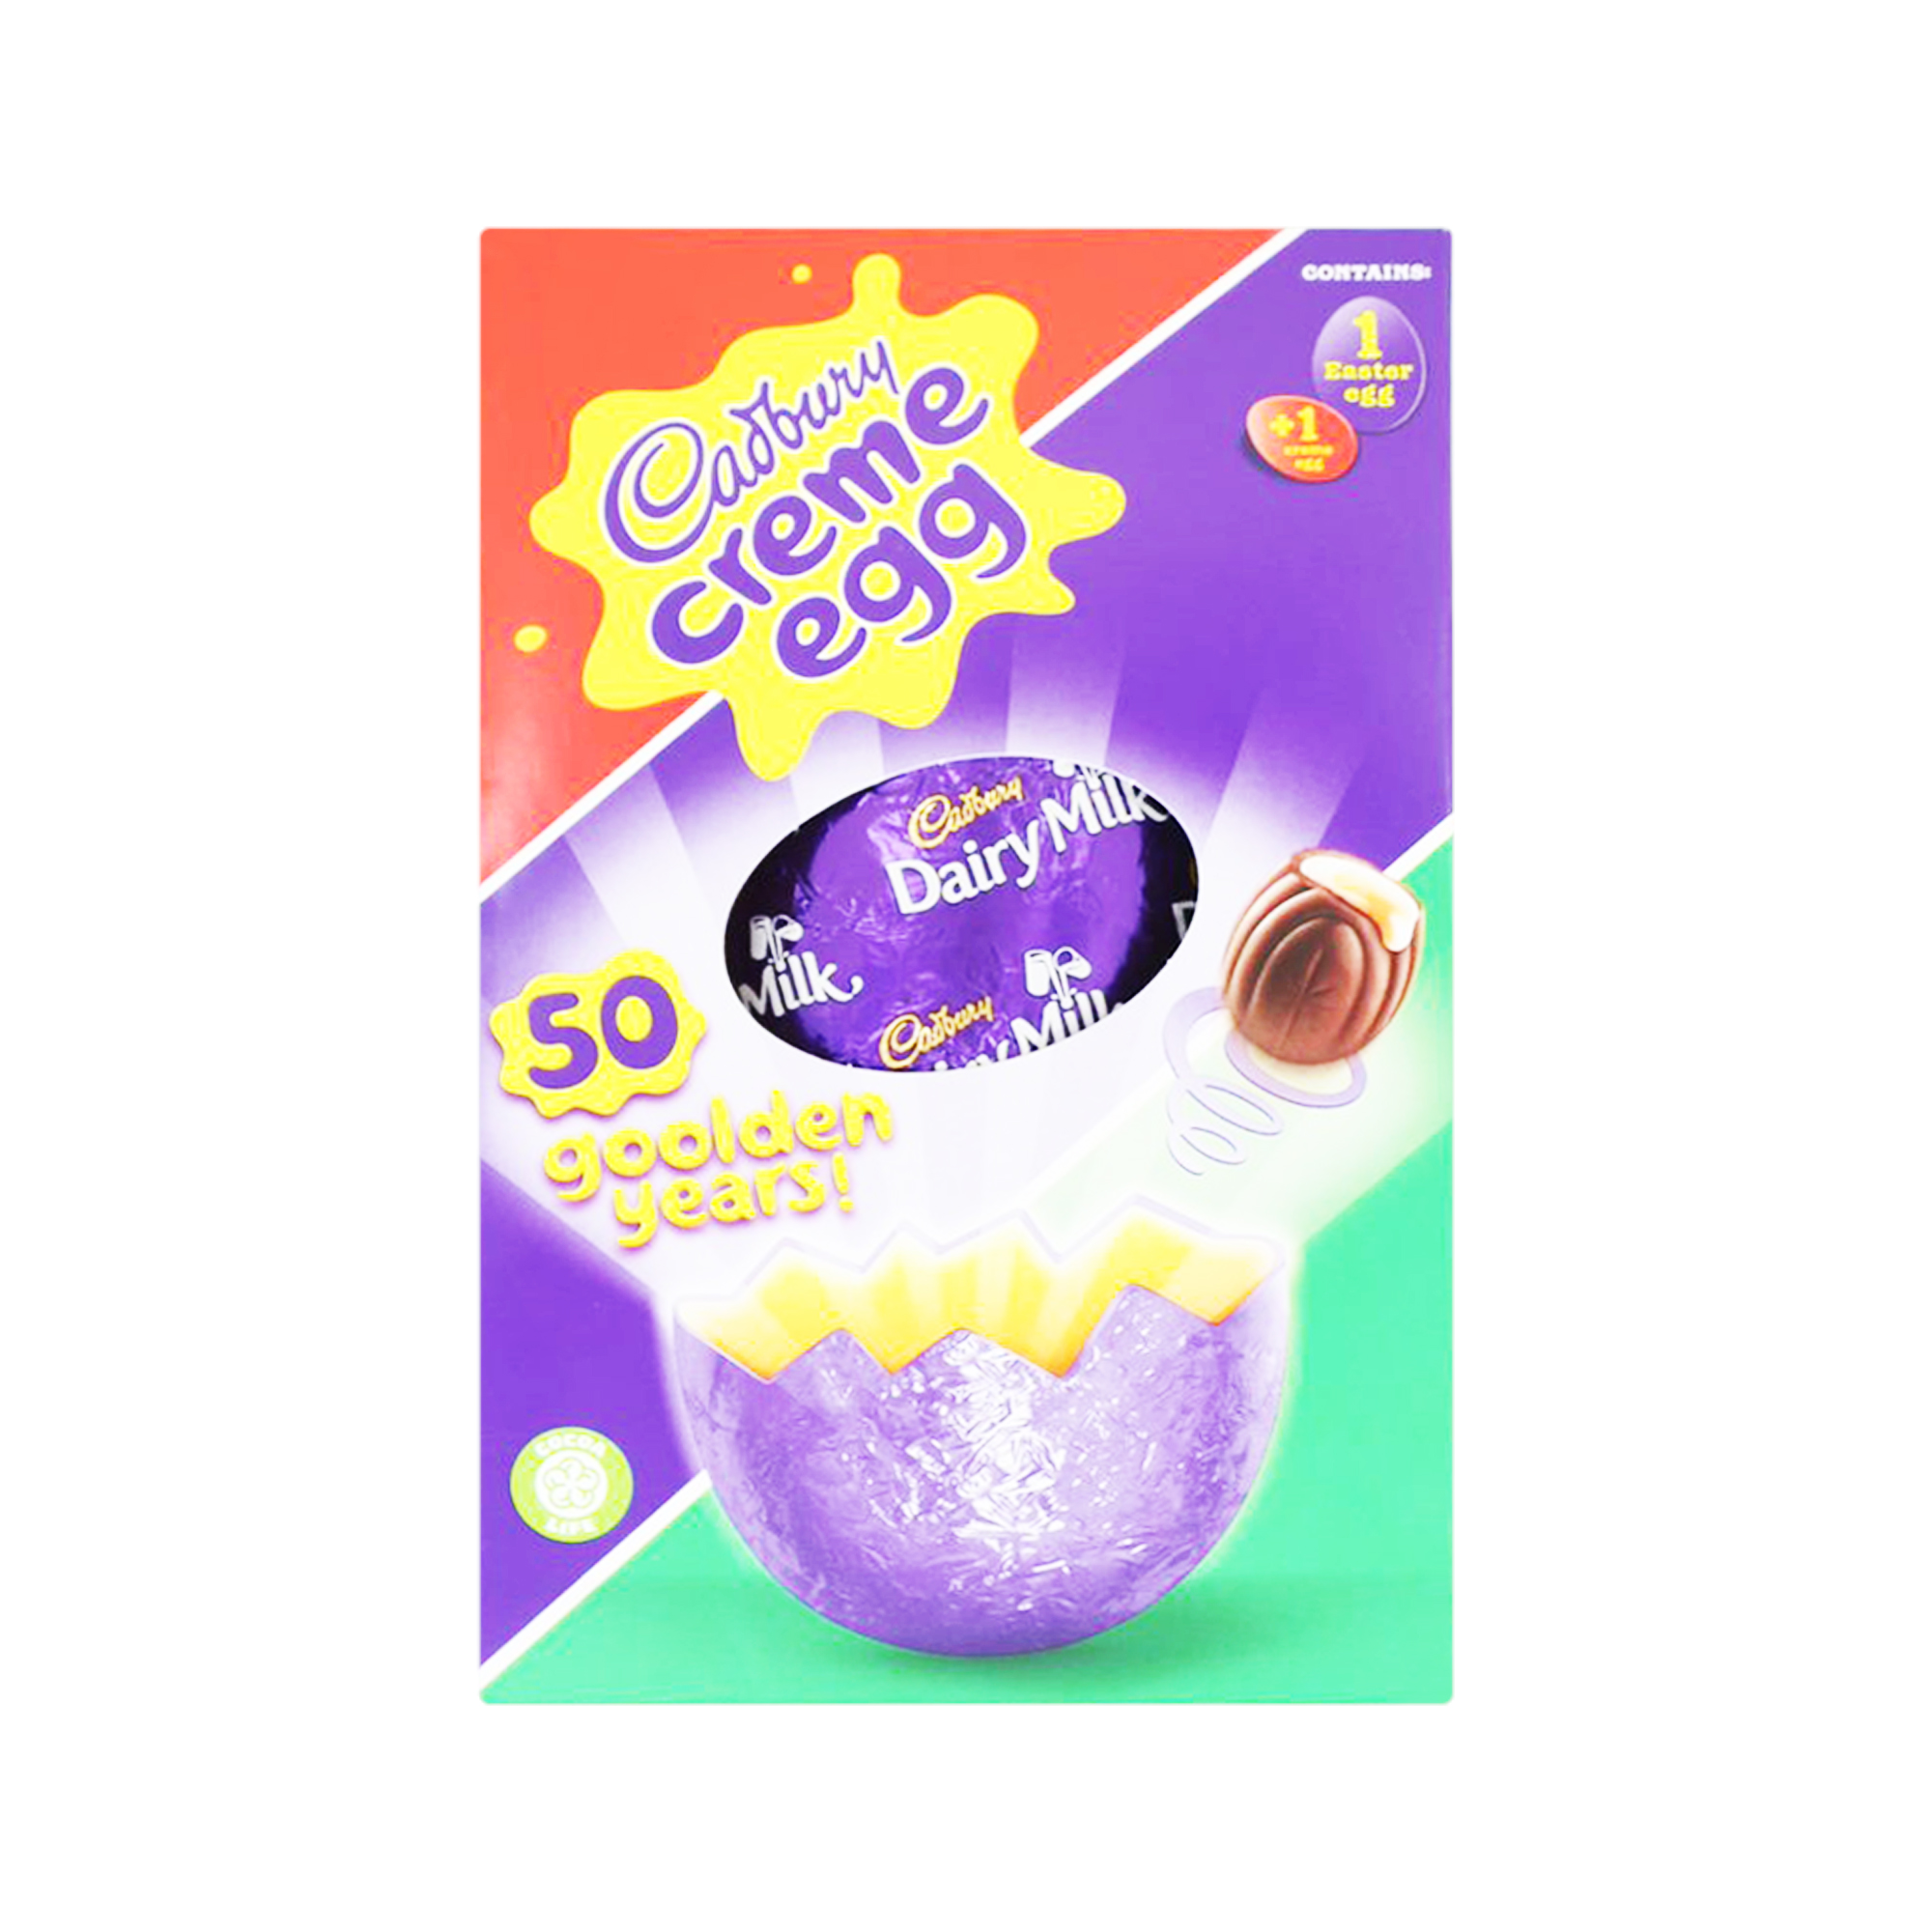 Cadbury Creme Egg Medium Easter Egg (138g)